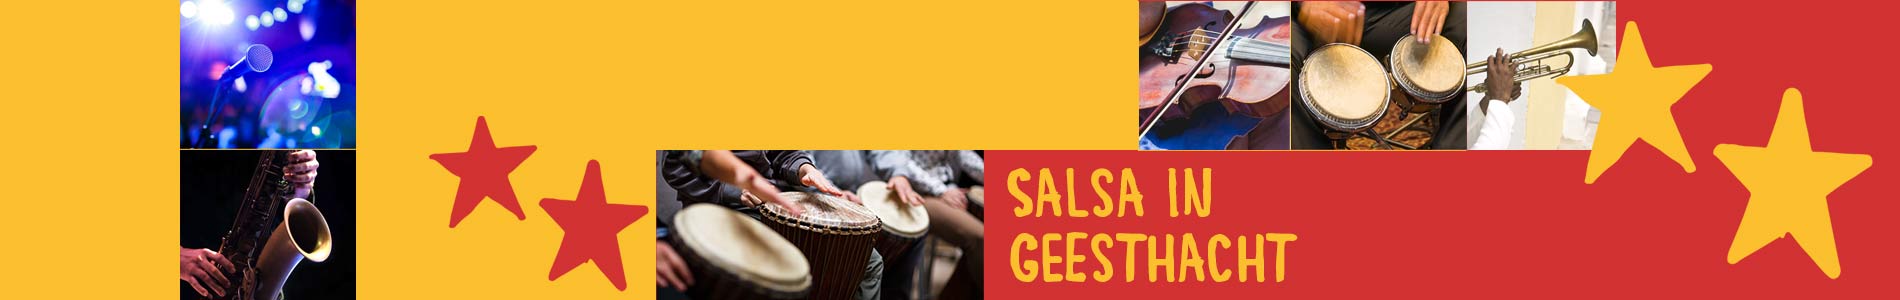 Salsa in Geesthacht – Salsa lernen und tanzen, Tanzkurse, Partys, Veranstaltungen